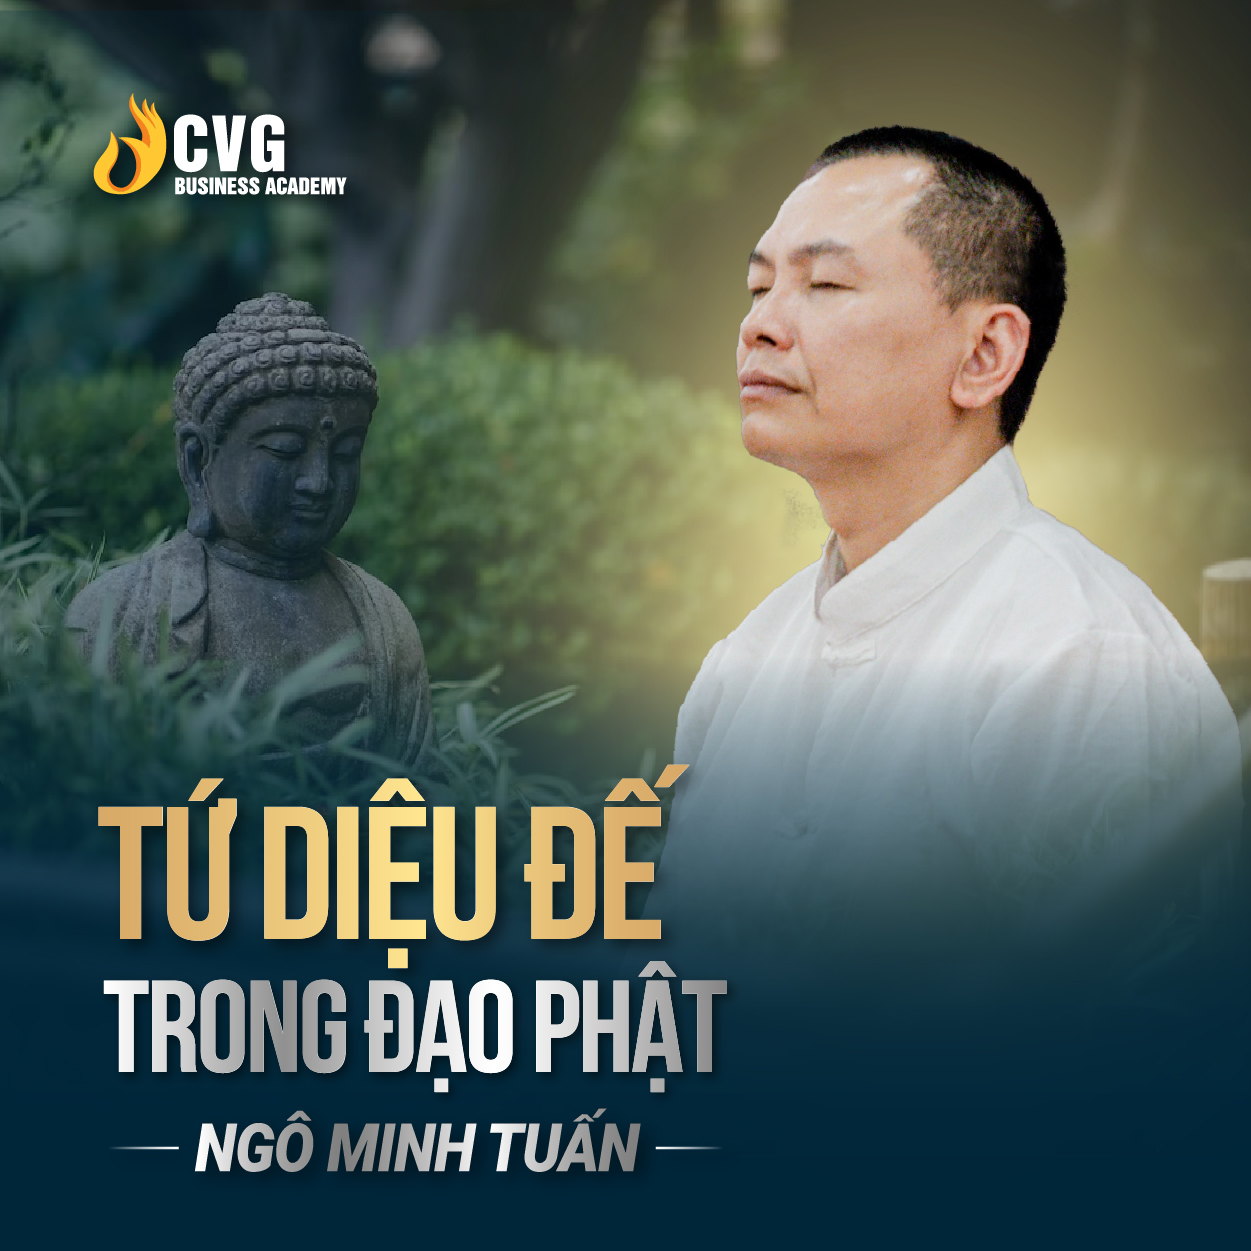 TỨ DIỆU ĐẾ TRONG ĐẠO PHẬT | Ngô Minh Tuấn | Học Viện CEO Việt Nam Global